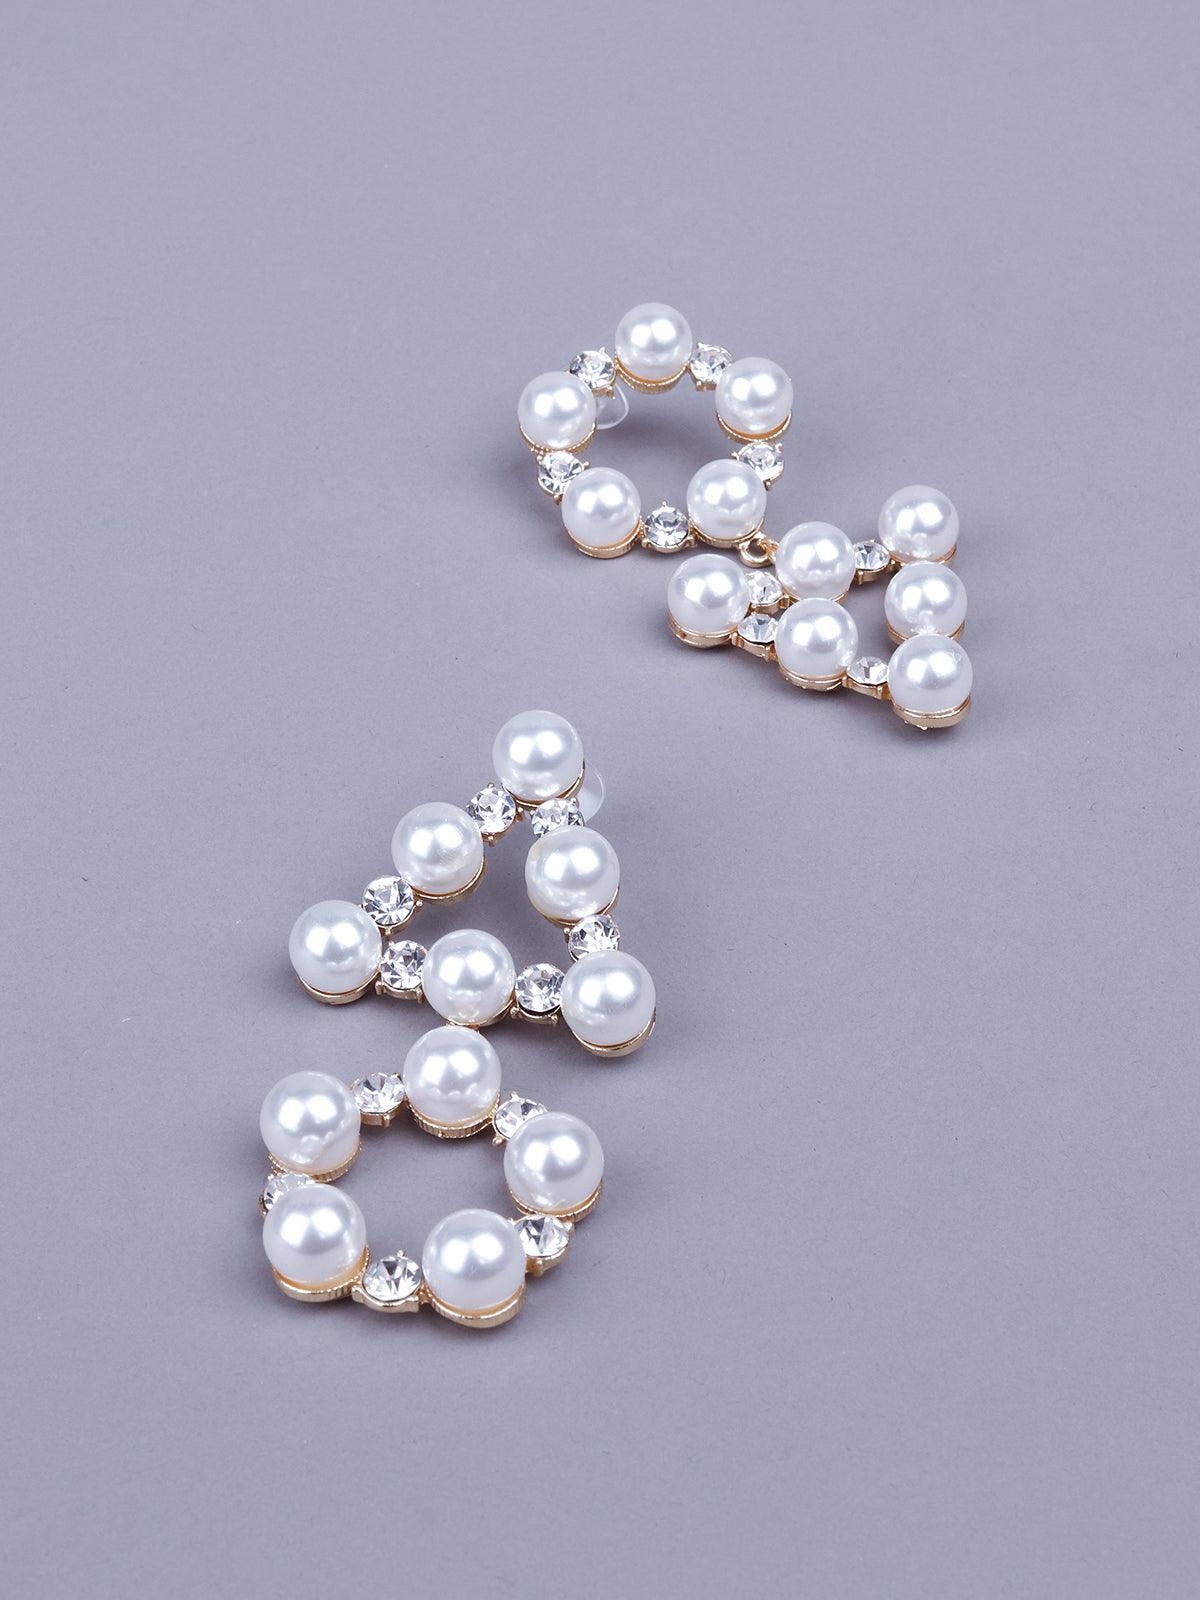 Women's Stunning Artificial Pearl Statement Earrings - Odette